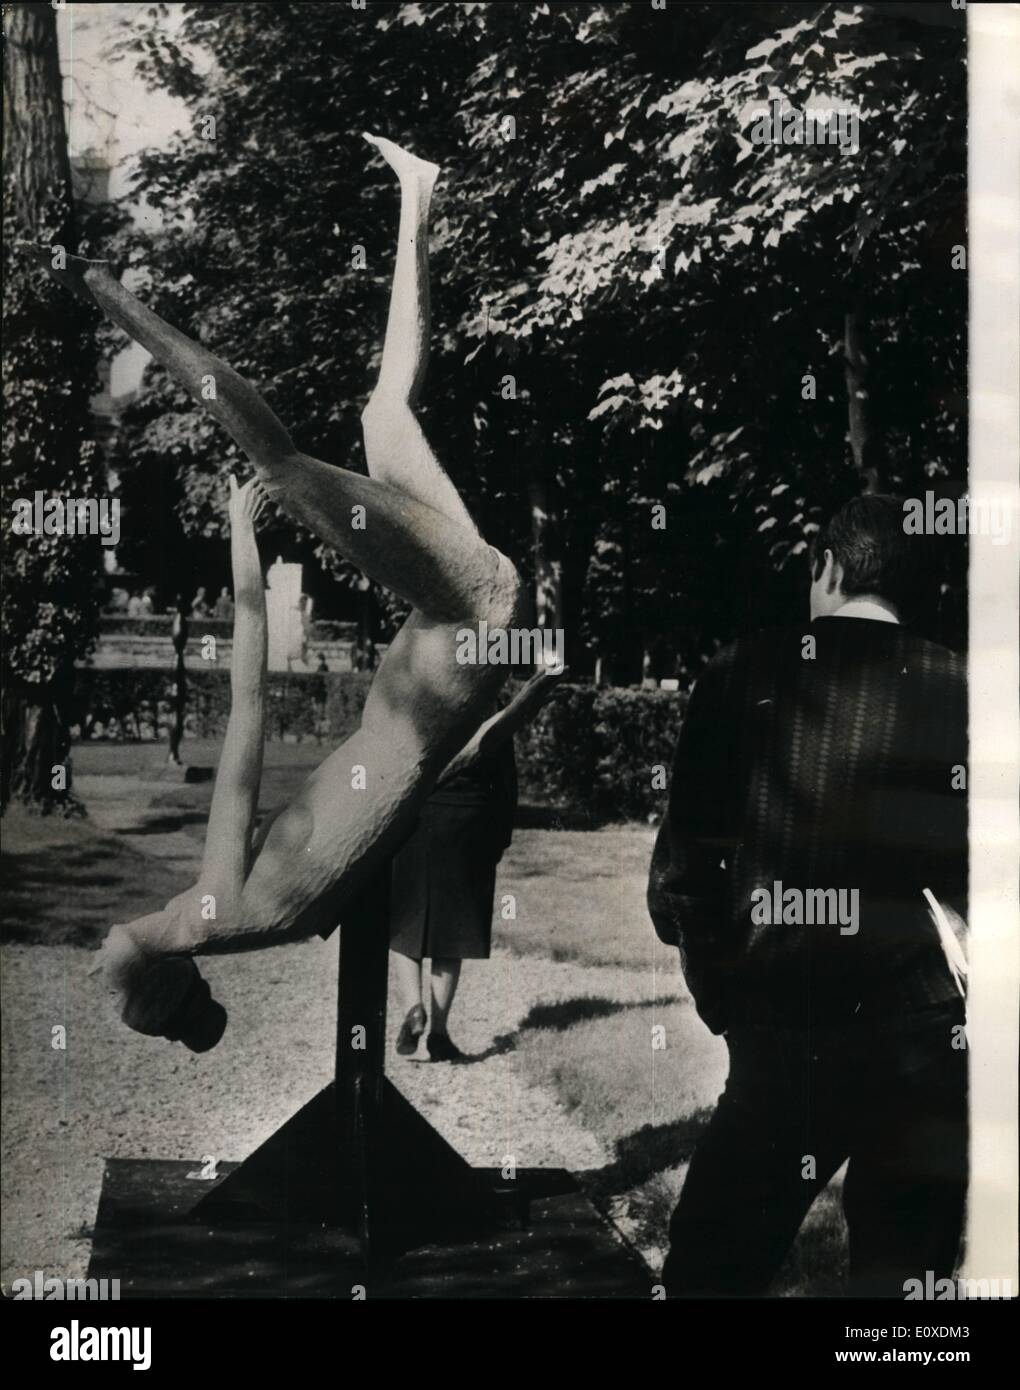 05 maggio 1966 - forme umane mostra.: una mostra di sculture figurativo autorizza le forme umane è ora trattenuto presso il Museo Redin, Parigi. La foto mostra la caduta di Merlier una delle sculture in mostra. Foto Stock